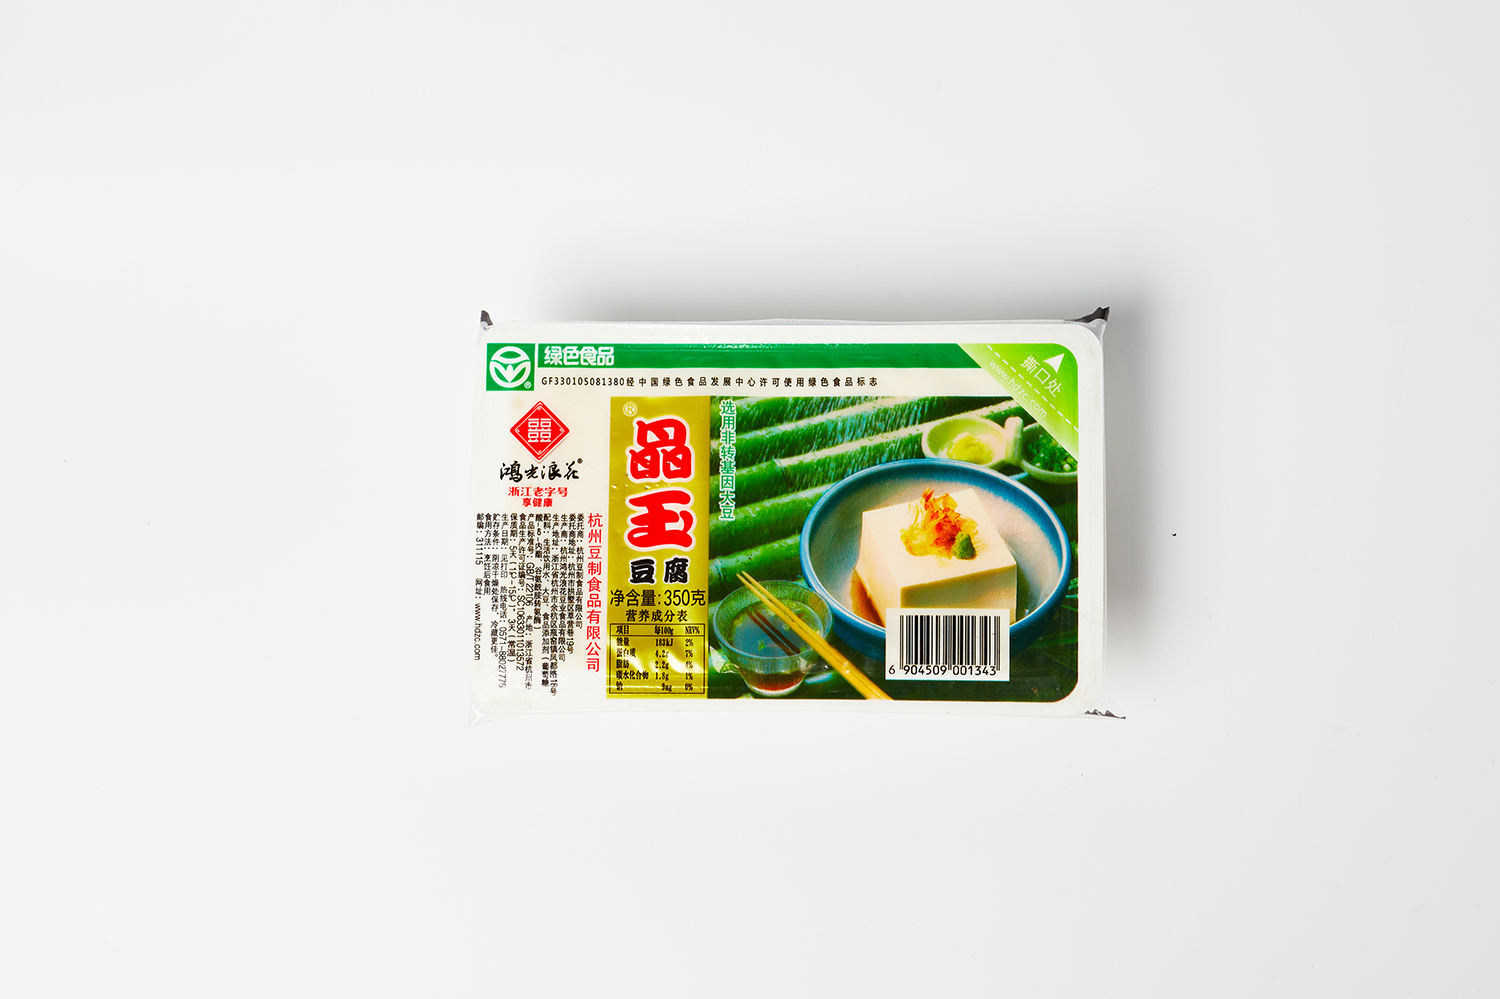 Crystal jade tofu